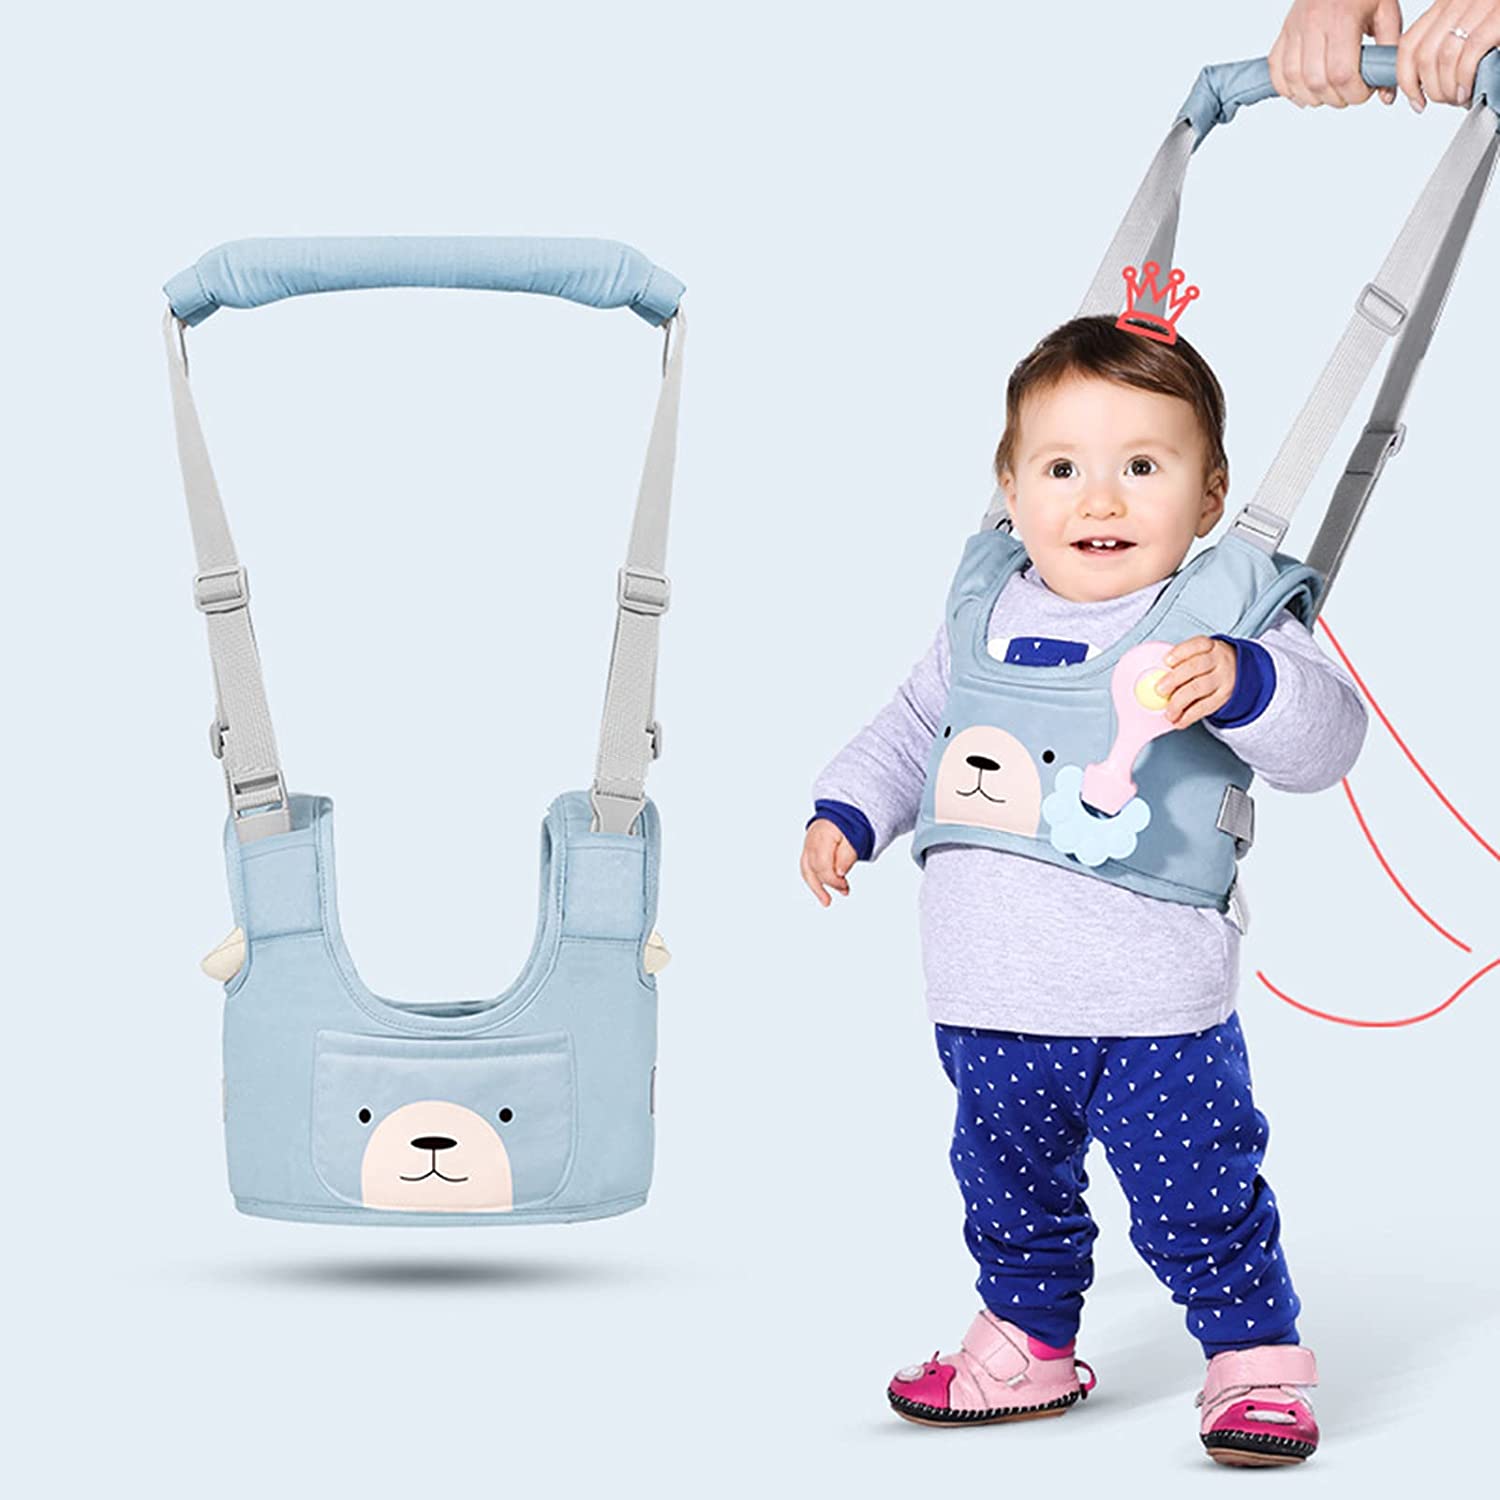 大人の助けを借りて、安全&安心歩行、赤ちゃんに一人歩行を教えるための補助器具(歩行器)です。歩き出して目の離せないお子様の事故防止に。安心、安全にお散歩が楽しめ。 高品質の純粋な綿で作られて、それは柔らかくて調節可能で。また、厚いパッドで赤ちゃんの脇に優しいです。出産祝い等の贈り物としても素晴。 両親の高さによって調整可能なので、体を曲げから背中の痛みを軽減できます。お家での歩行練習に、大人対するでも解放され、子供にも充分自由な空間を提供できます。 コンパクトかつ軽いので、カバンに入れても場所をとりません。外出先や帰省先でとても便利に活躍できますよ。取り付けも簡単で、チェアベルトを子供に取り付け、あとは椅子に固定するだけです。 【安心サービス】もし何か問題があったら、いつでも私達のアフターサービスチームに連絡してください。24時間以内に問題を解決するようにお手伝いします。私はあなたに楽しい買い物体験を願っています、そしてあなたとあなたの家族が健康であり、あなたのすべての願いが叶うことを願っています。